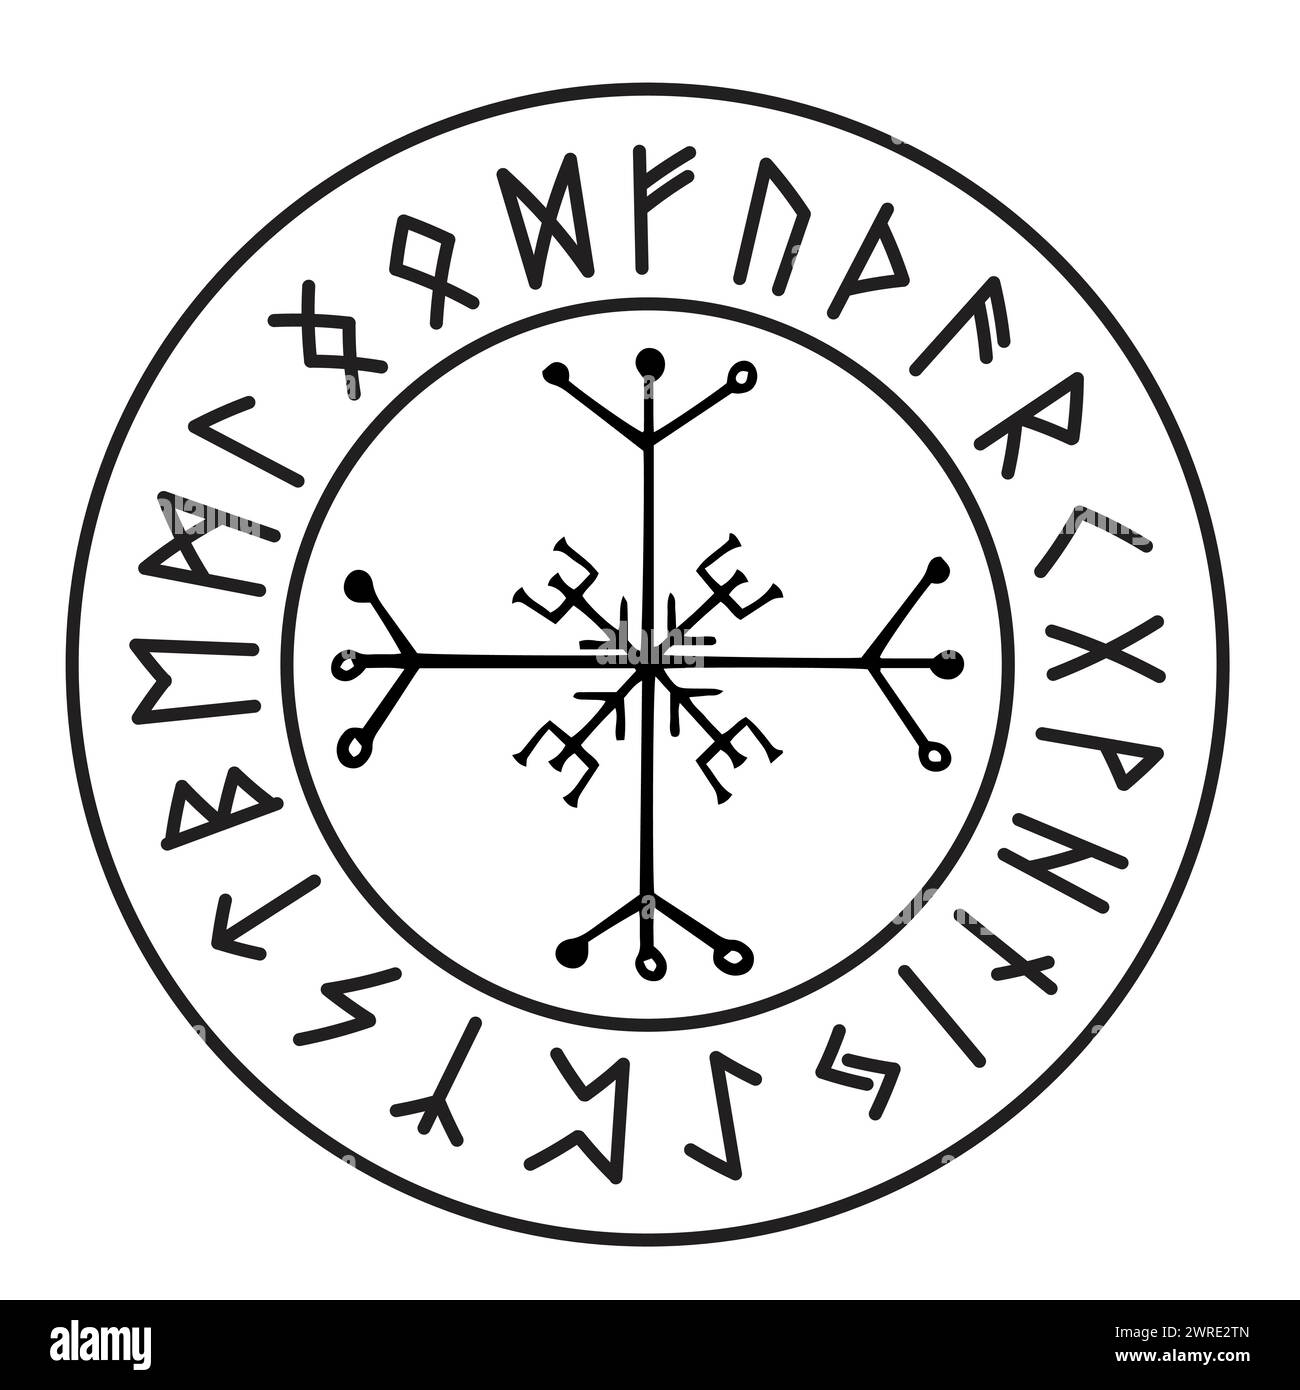 Cerchio rune talismano vichingo islandese celtico bussola di navigazione, cornice amuleto occulto, scrittura norrena tribale isolata su sfondo bianco. Illustrazione vettoriale Illustrazione Vettoriale